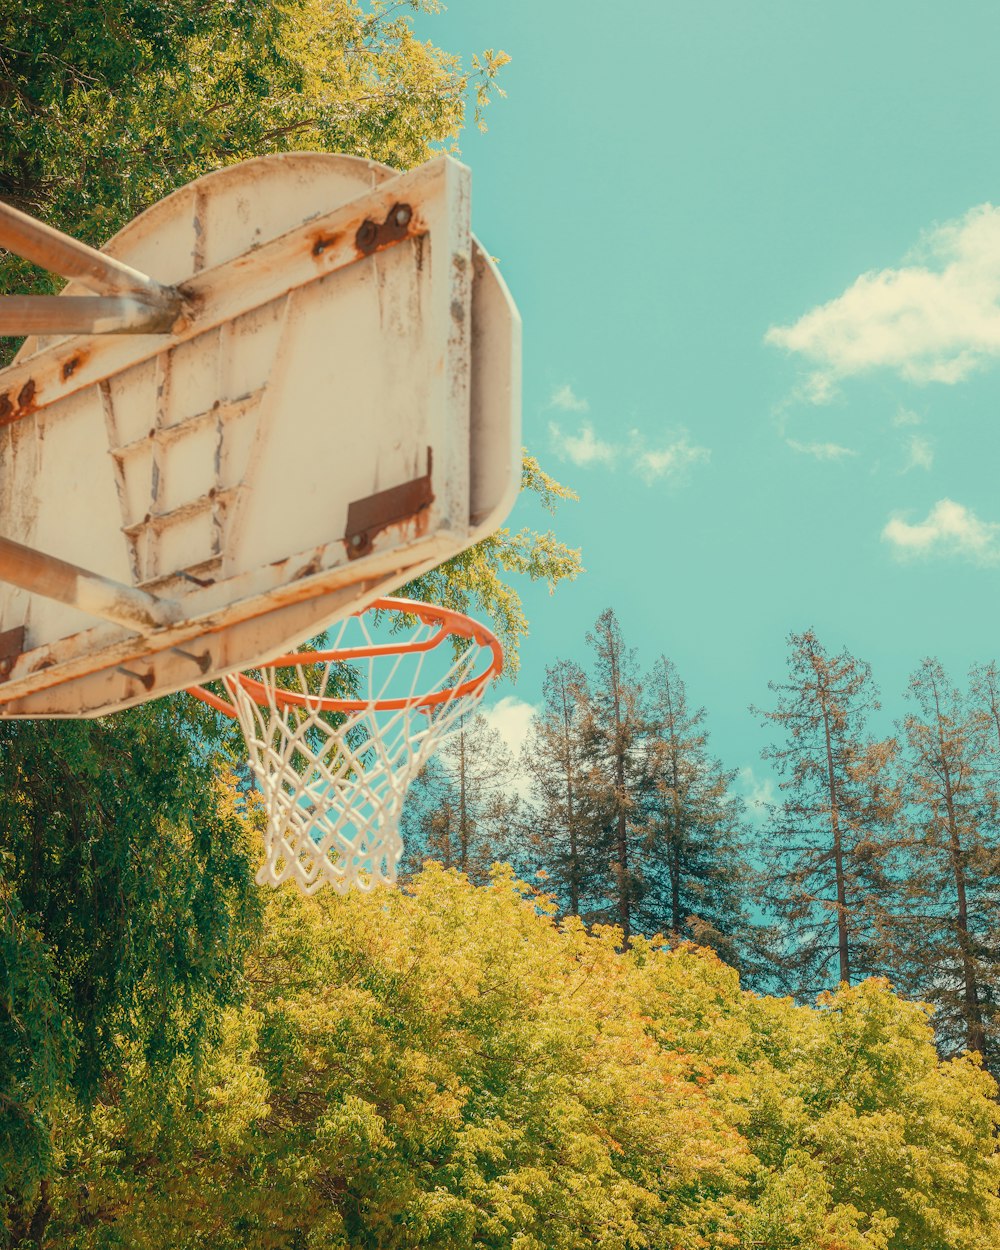 배경에 나무가 있는 오래된 농구 골대